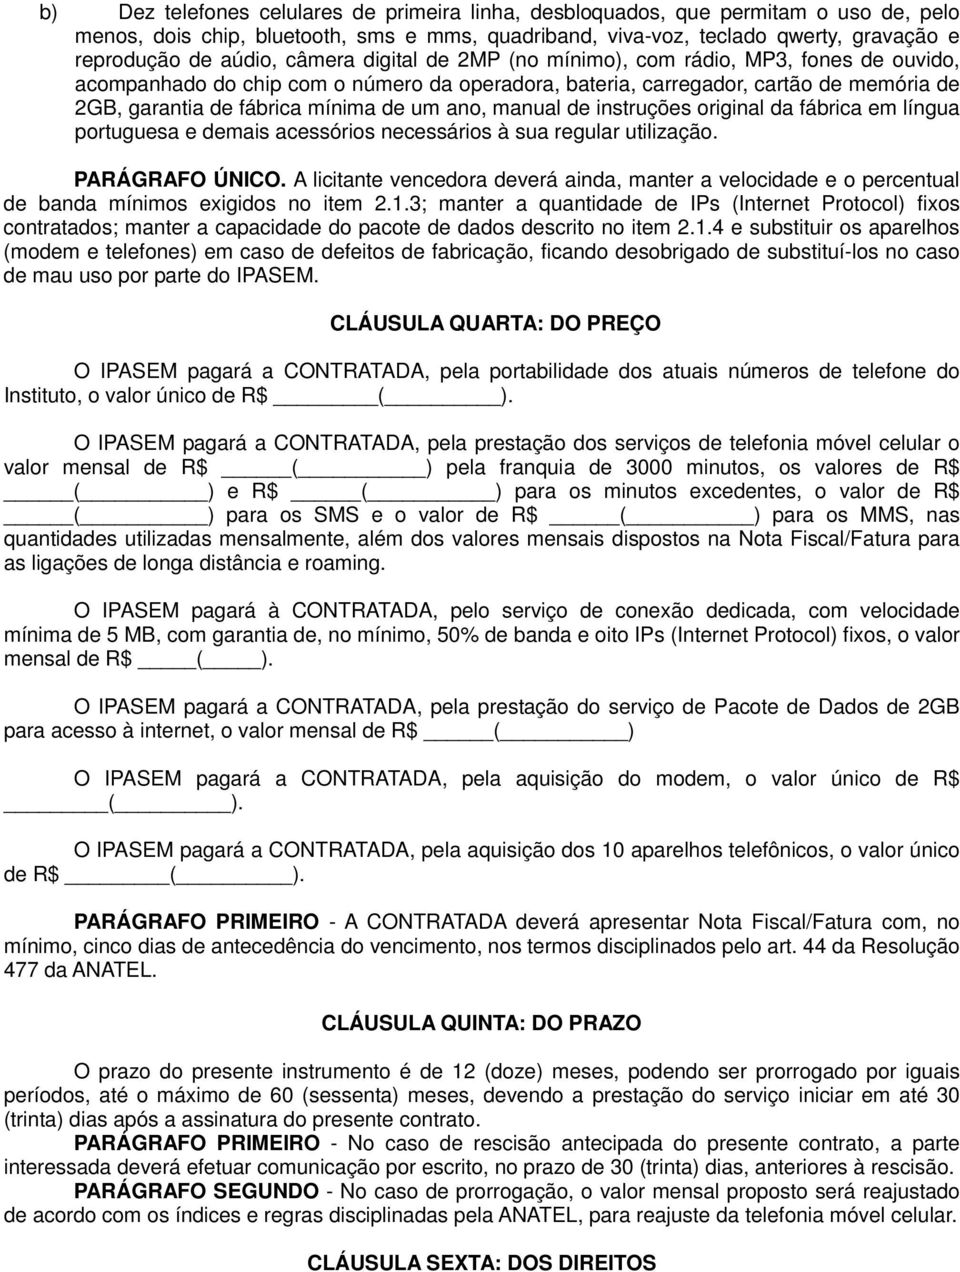 manual de instruções original da fábrica em língua portuguesa e demais acessórios necessários à sua regular utilização. PARÁGRAFO ÚNICO.